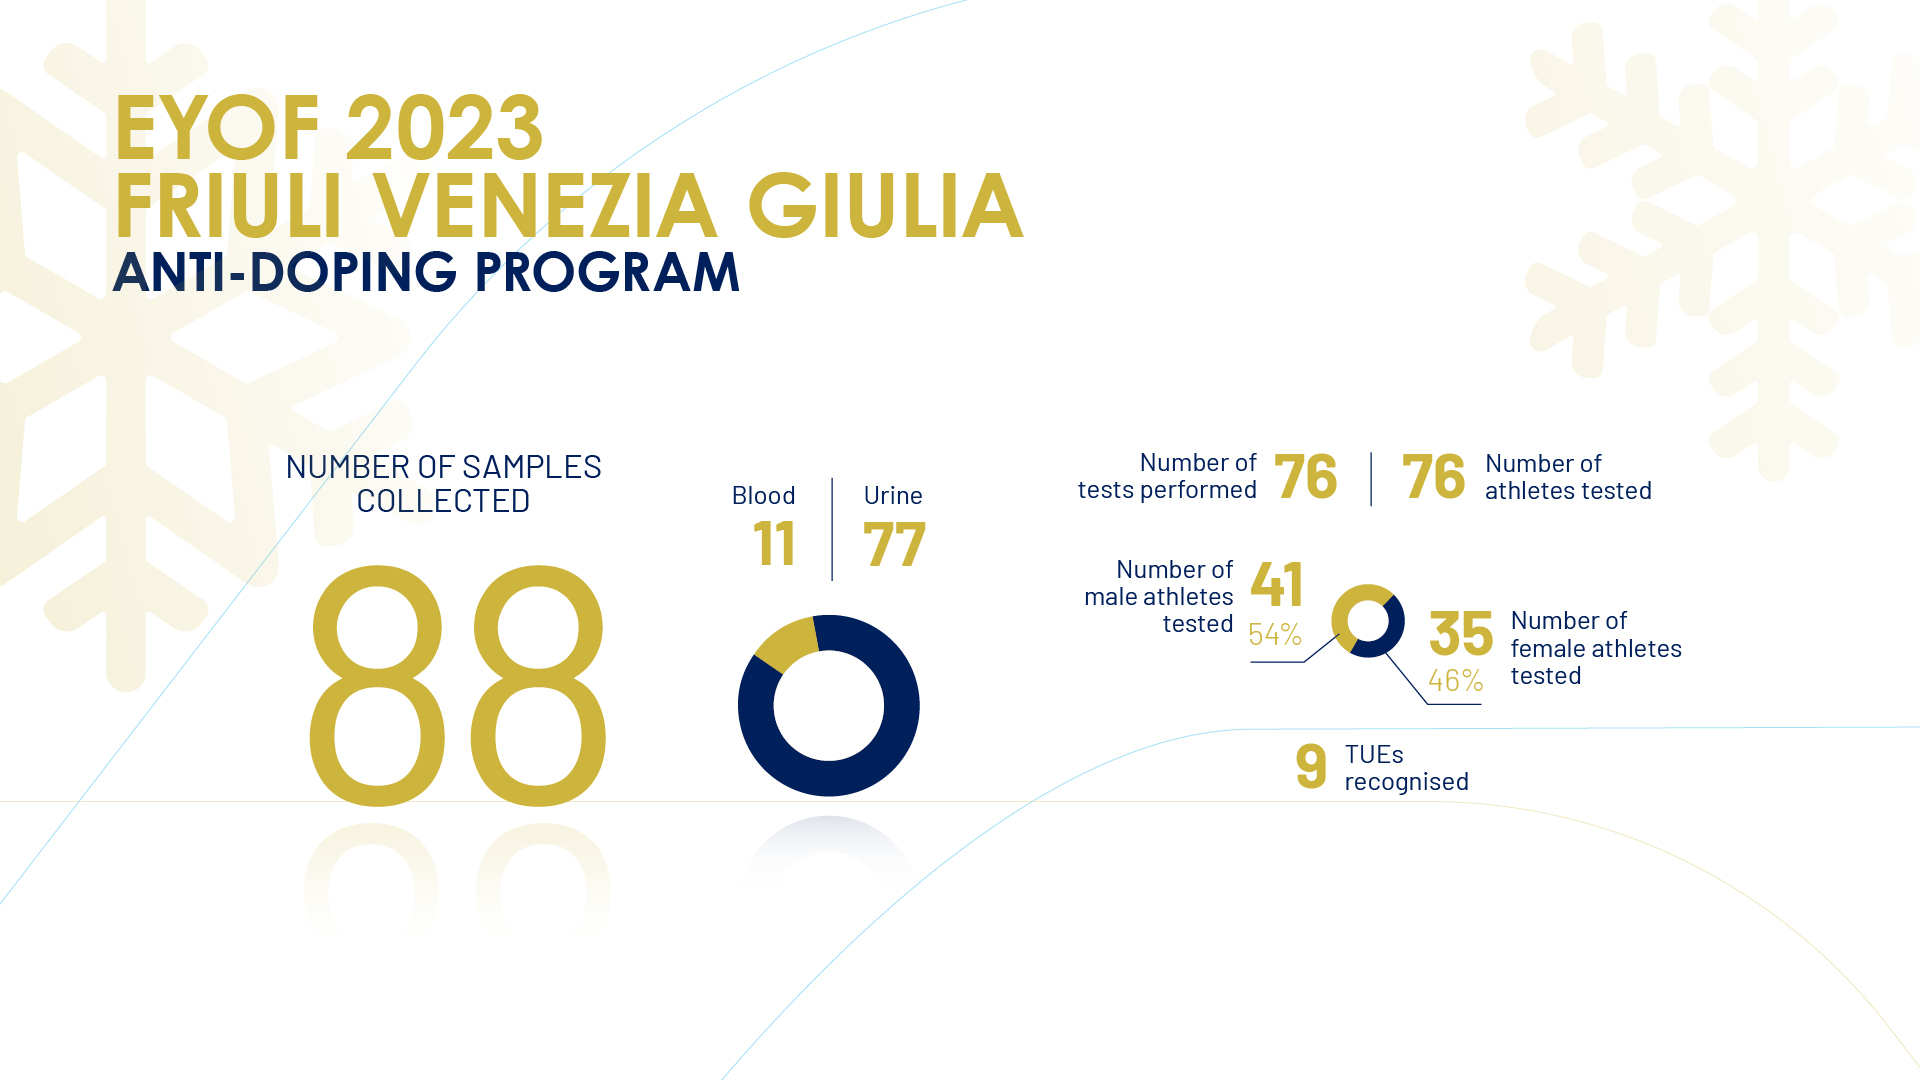 EYOF 2023 Friuli Venezia Giulia